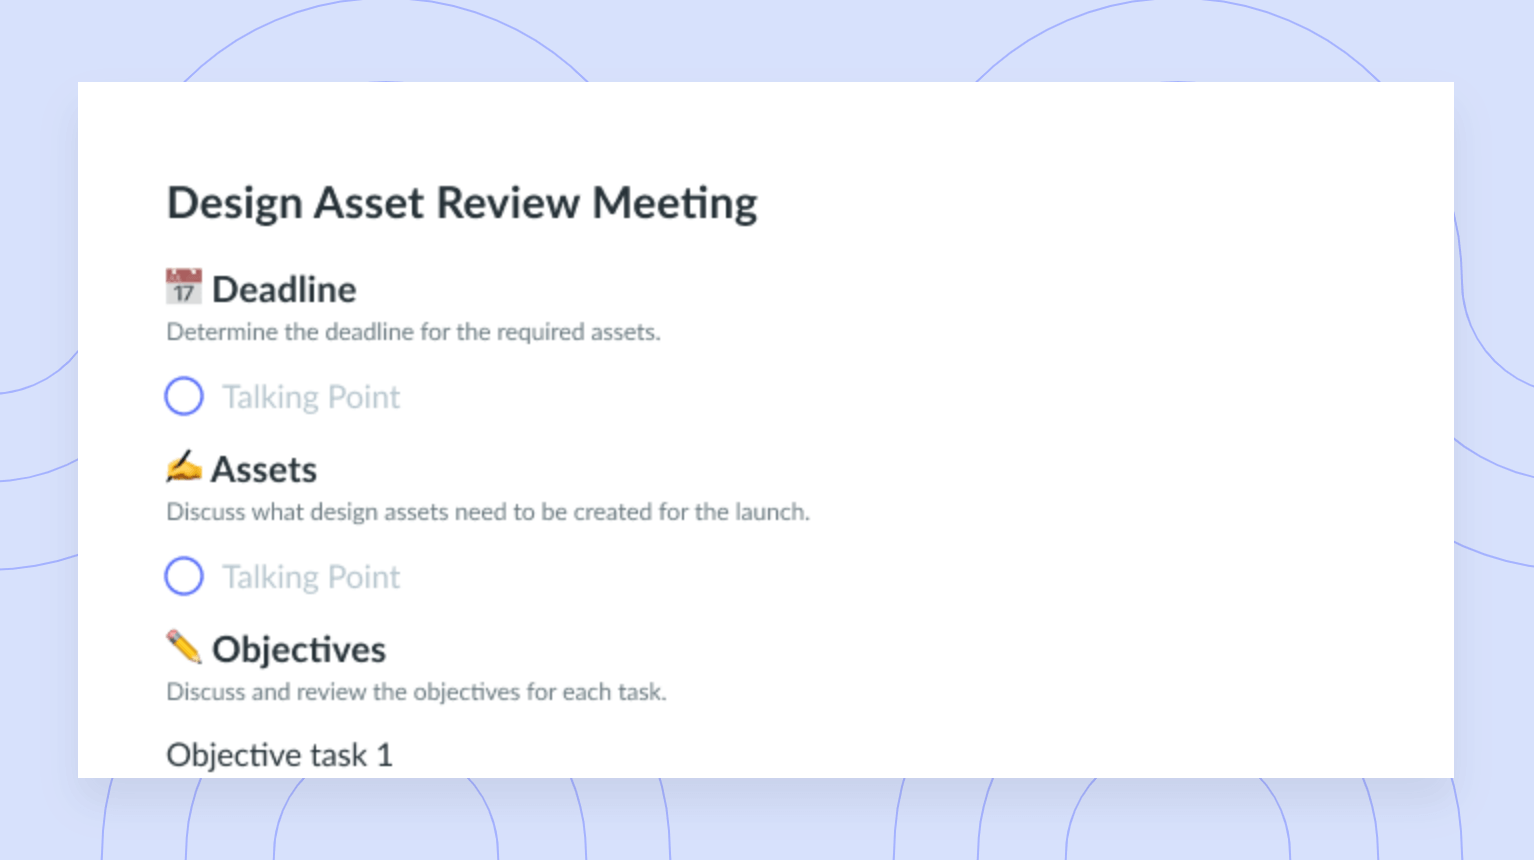 Design Asset Review Meeting Template